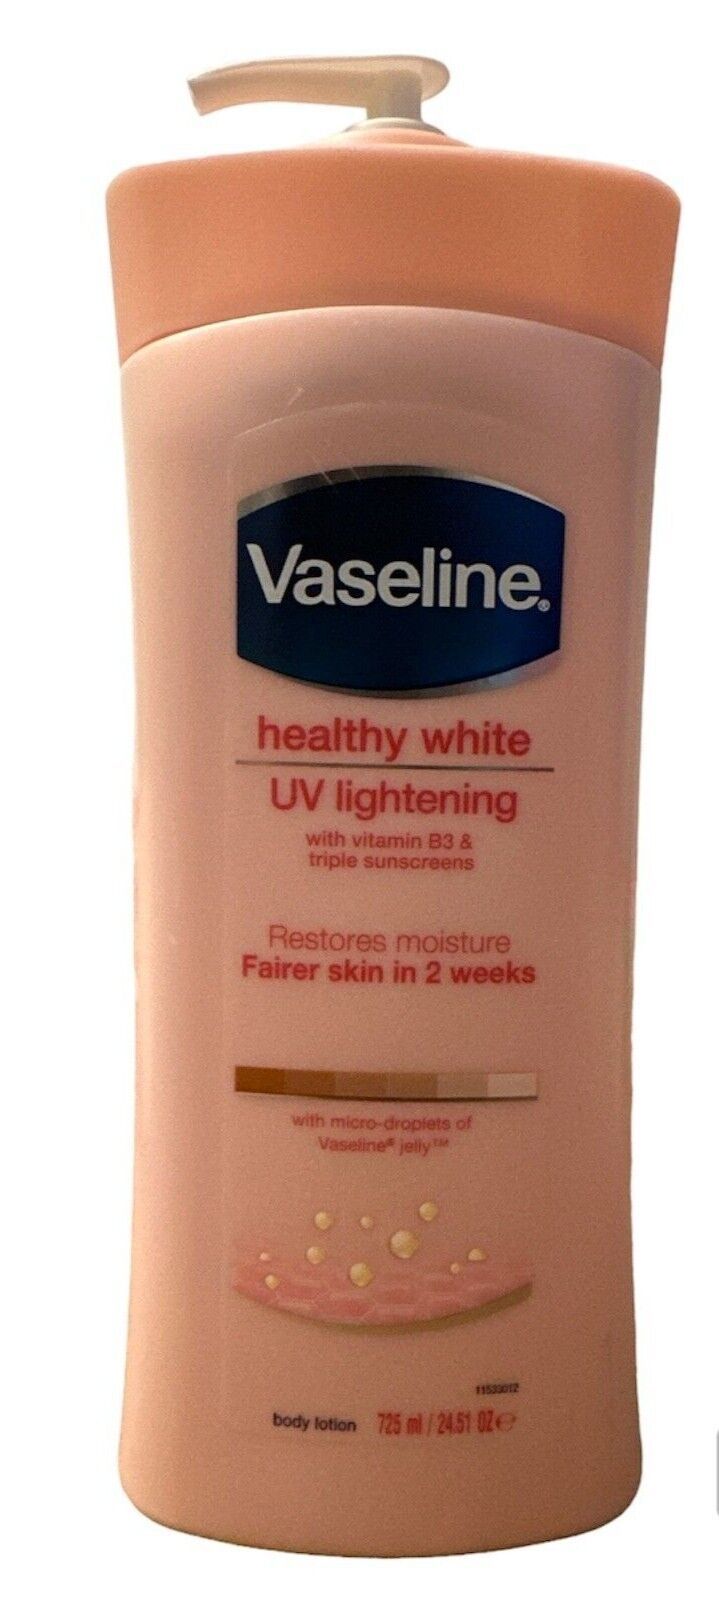 Vaseline Healthy White UV Lightening Vitamin B3 24.51 Oz Fairer Skin Pump 725ml - $29.99